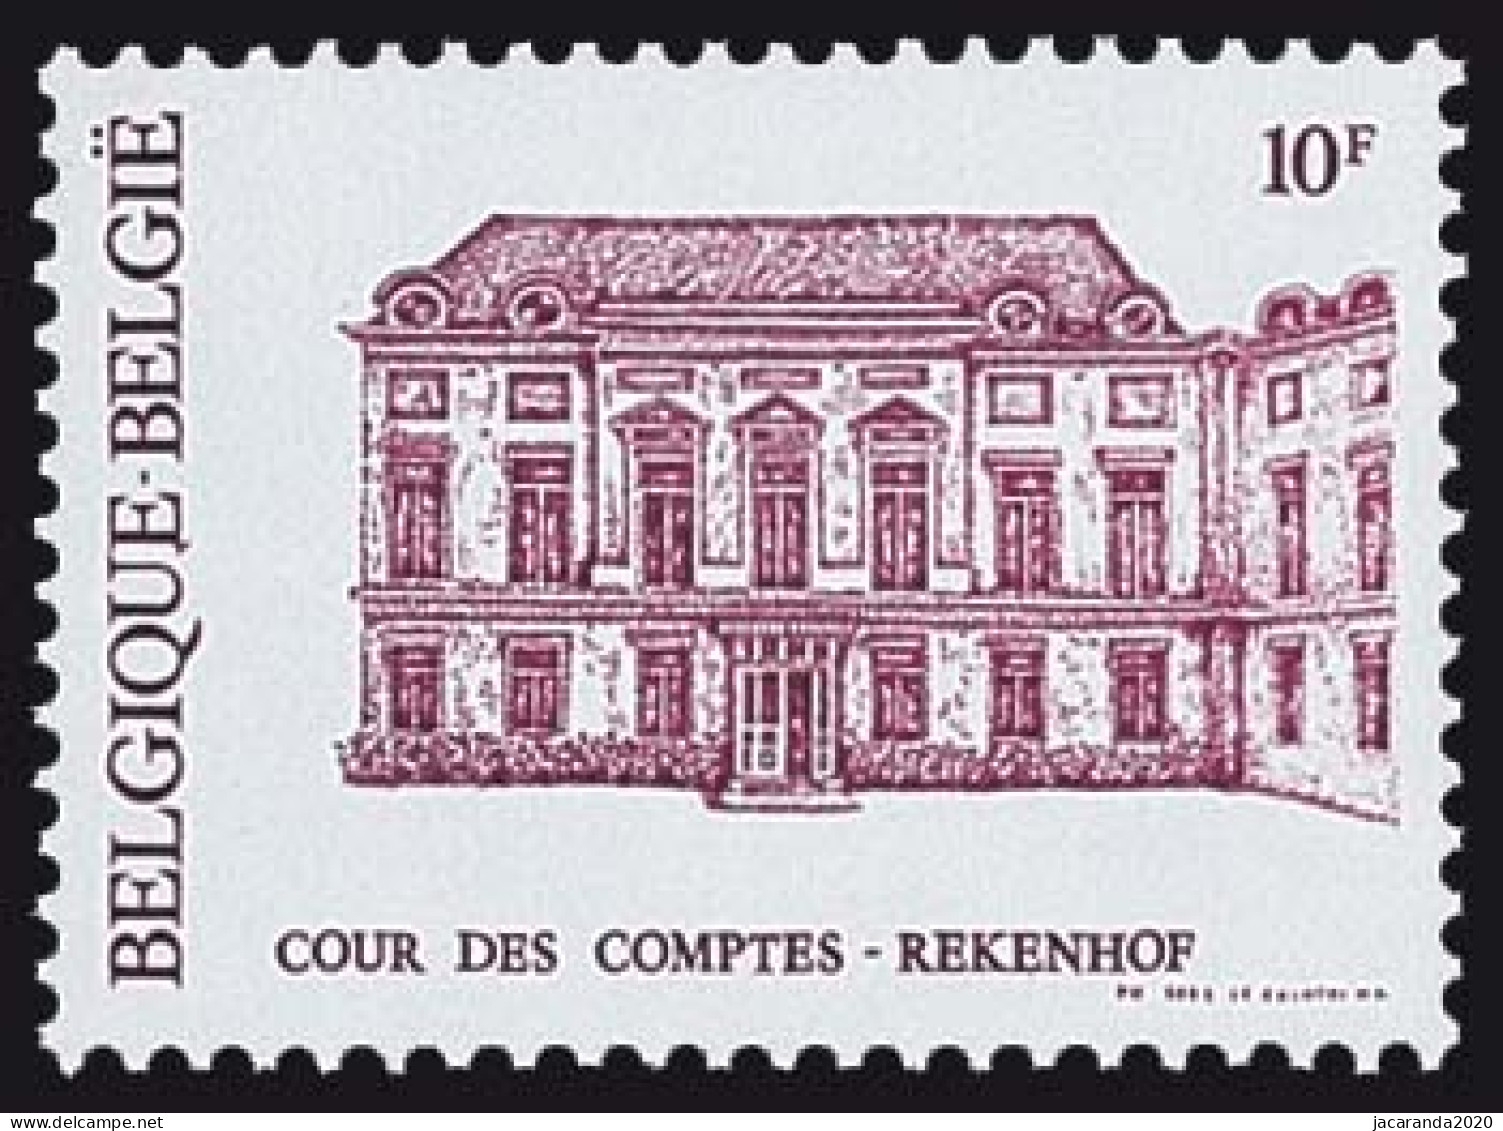 België 2017 - 150 Jaar Rekenhof - Cour Des Comptes - Ongebruikt